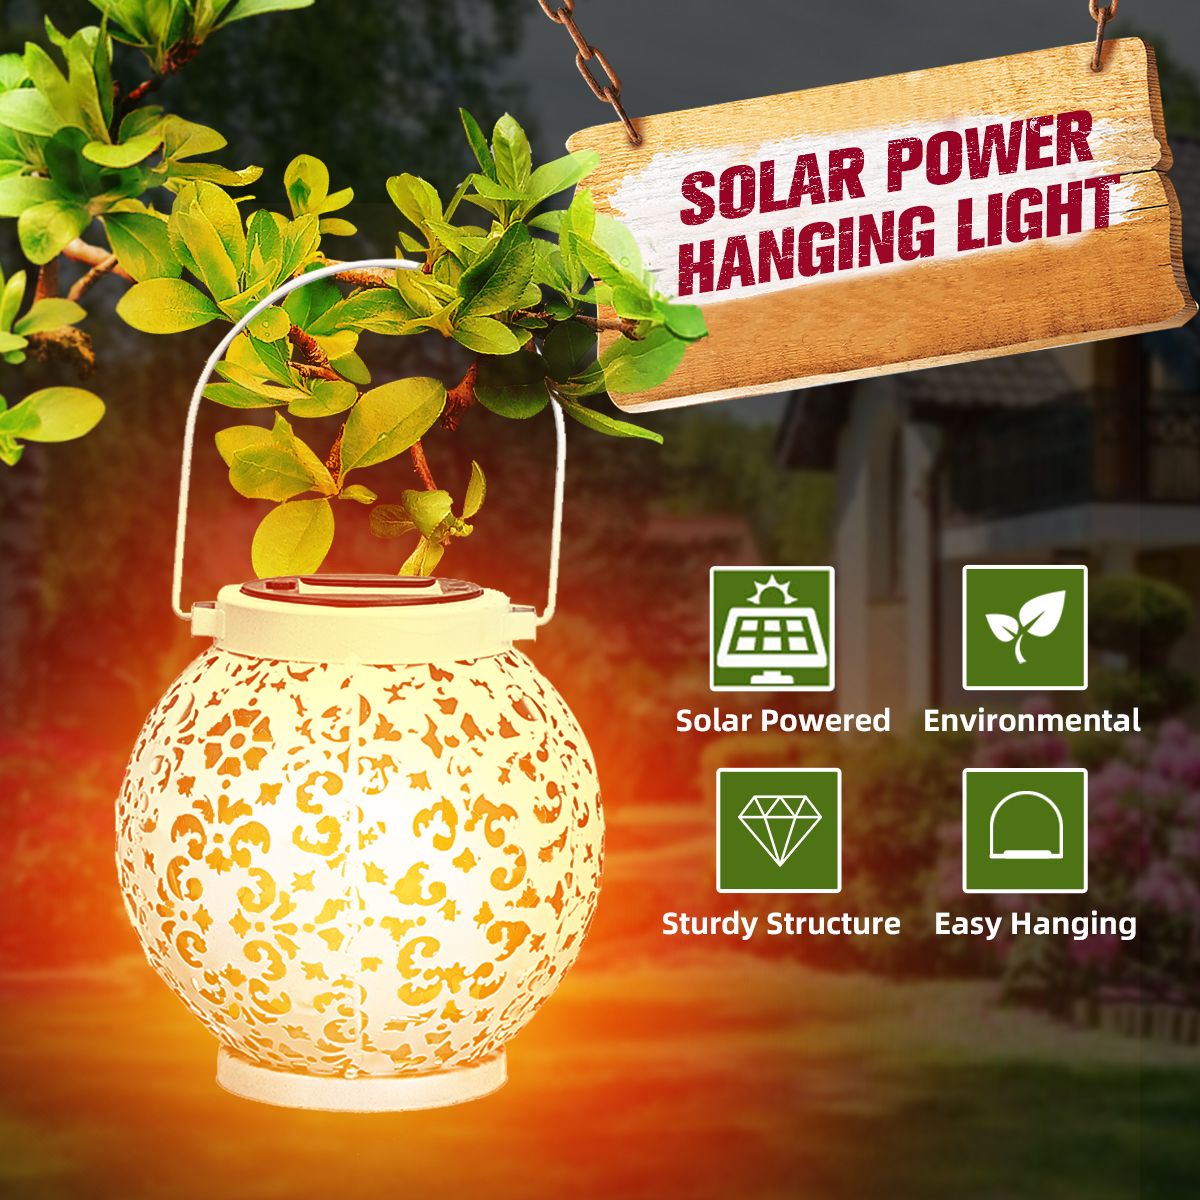 Patio-Hollow-Indoor-Outdoor-Solar-Power-Lantern-Hanging-Light-Garden-Lamp-Yard-1696478